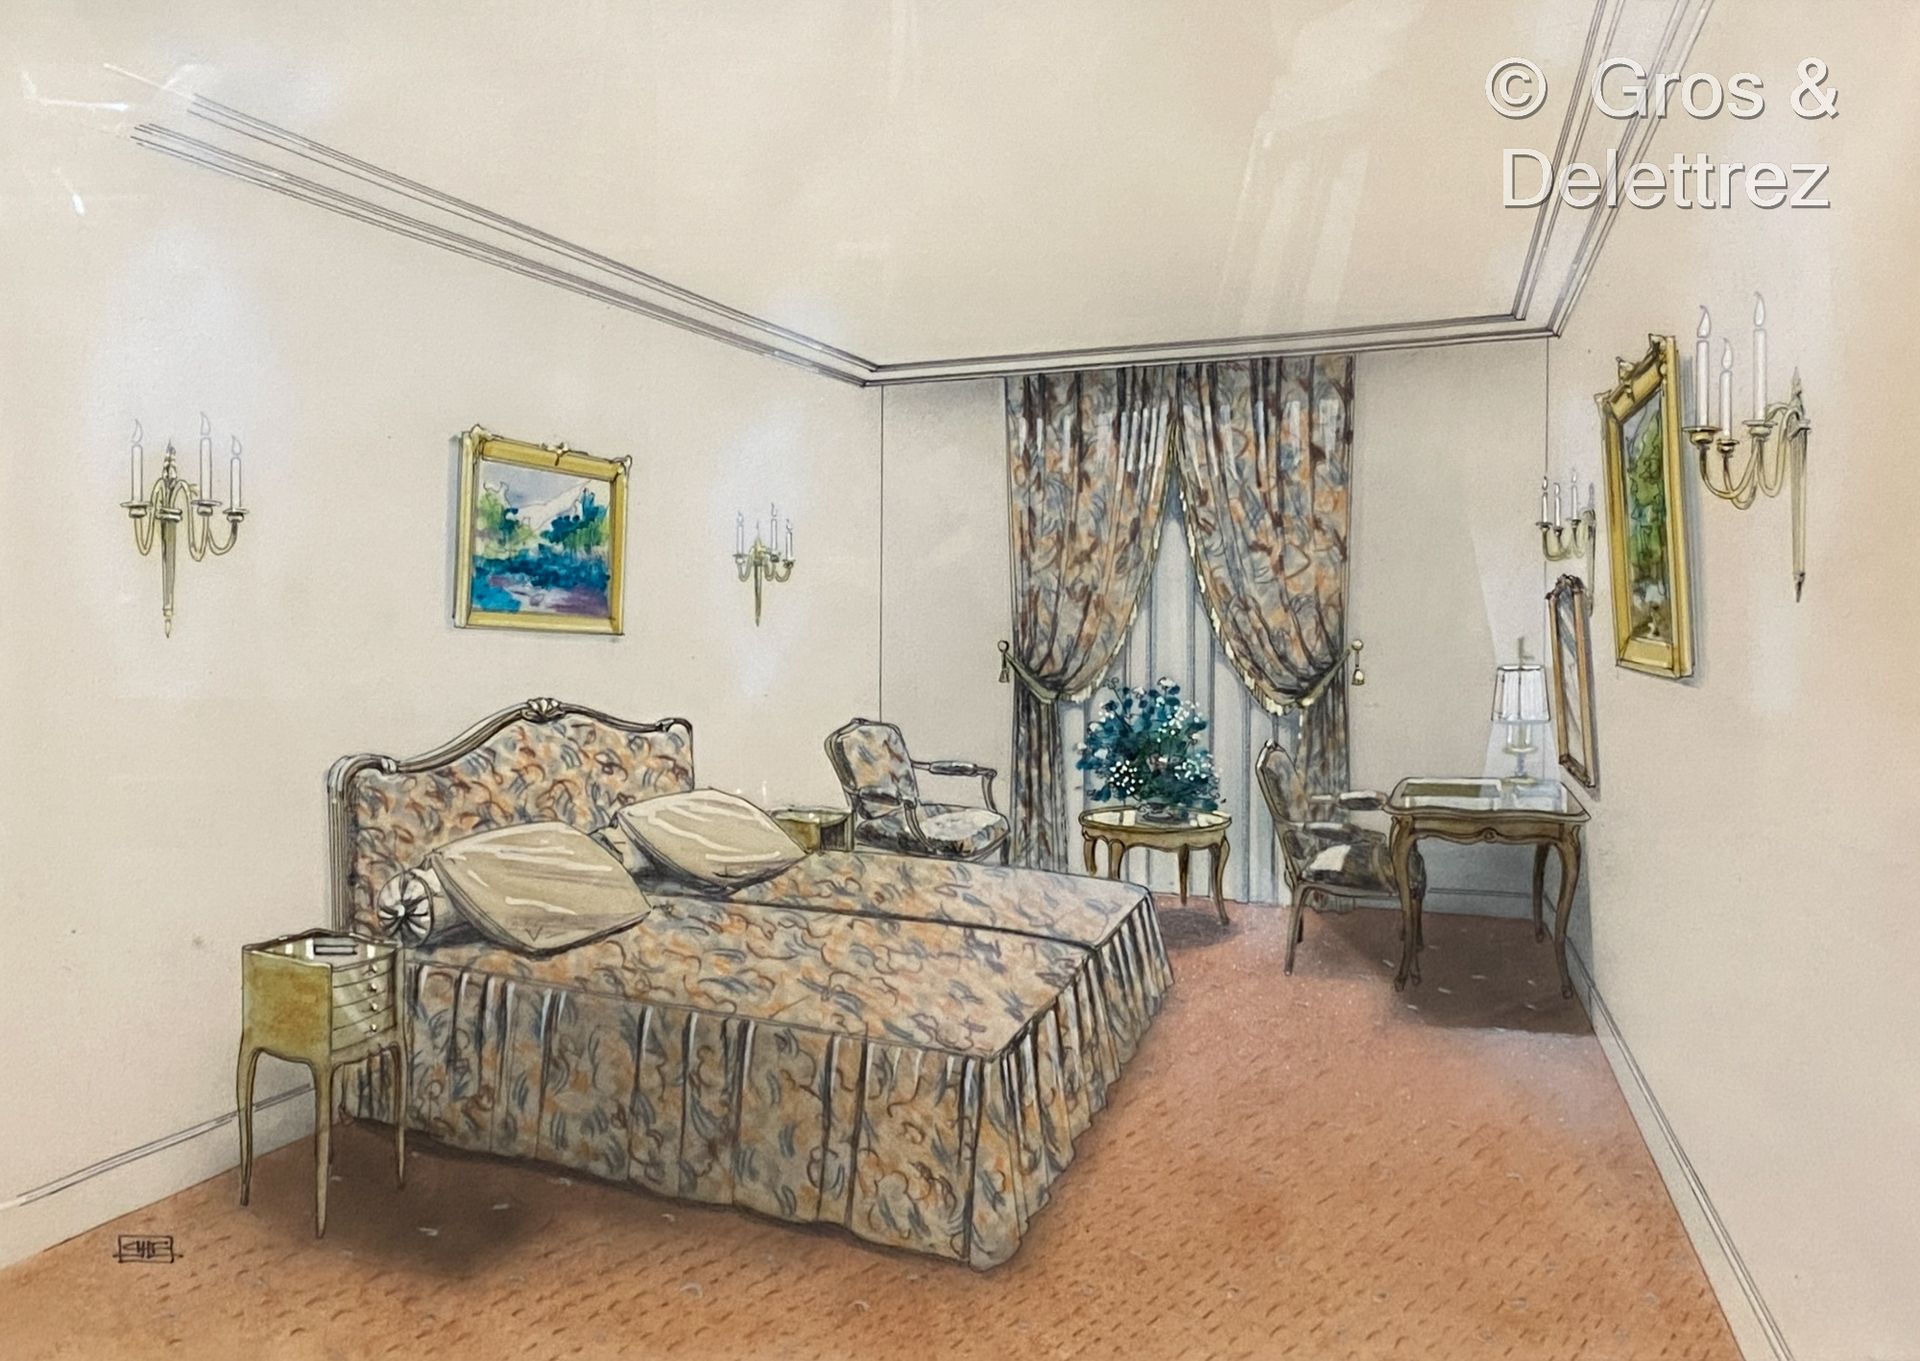 Null (E) Proyecto de una habitación de hotel de estilo Luis XV 

Rotulador y gou&hellip;